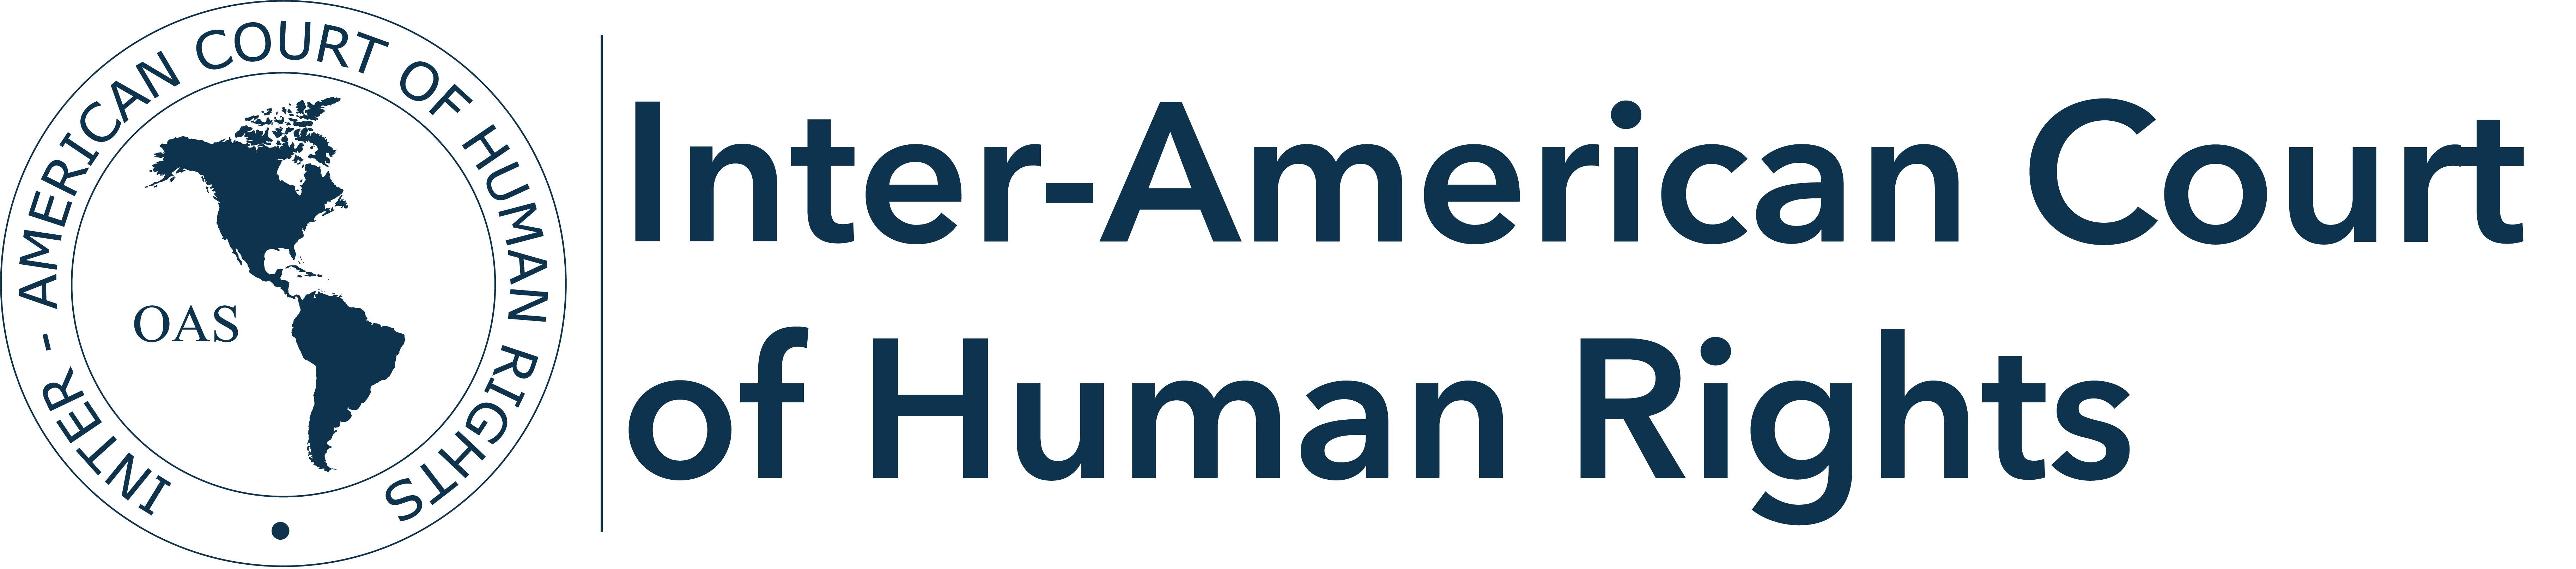 Logo Corte Interamericana de Derechos Humanos